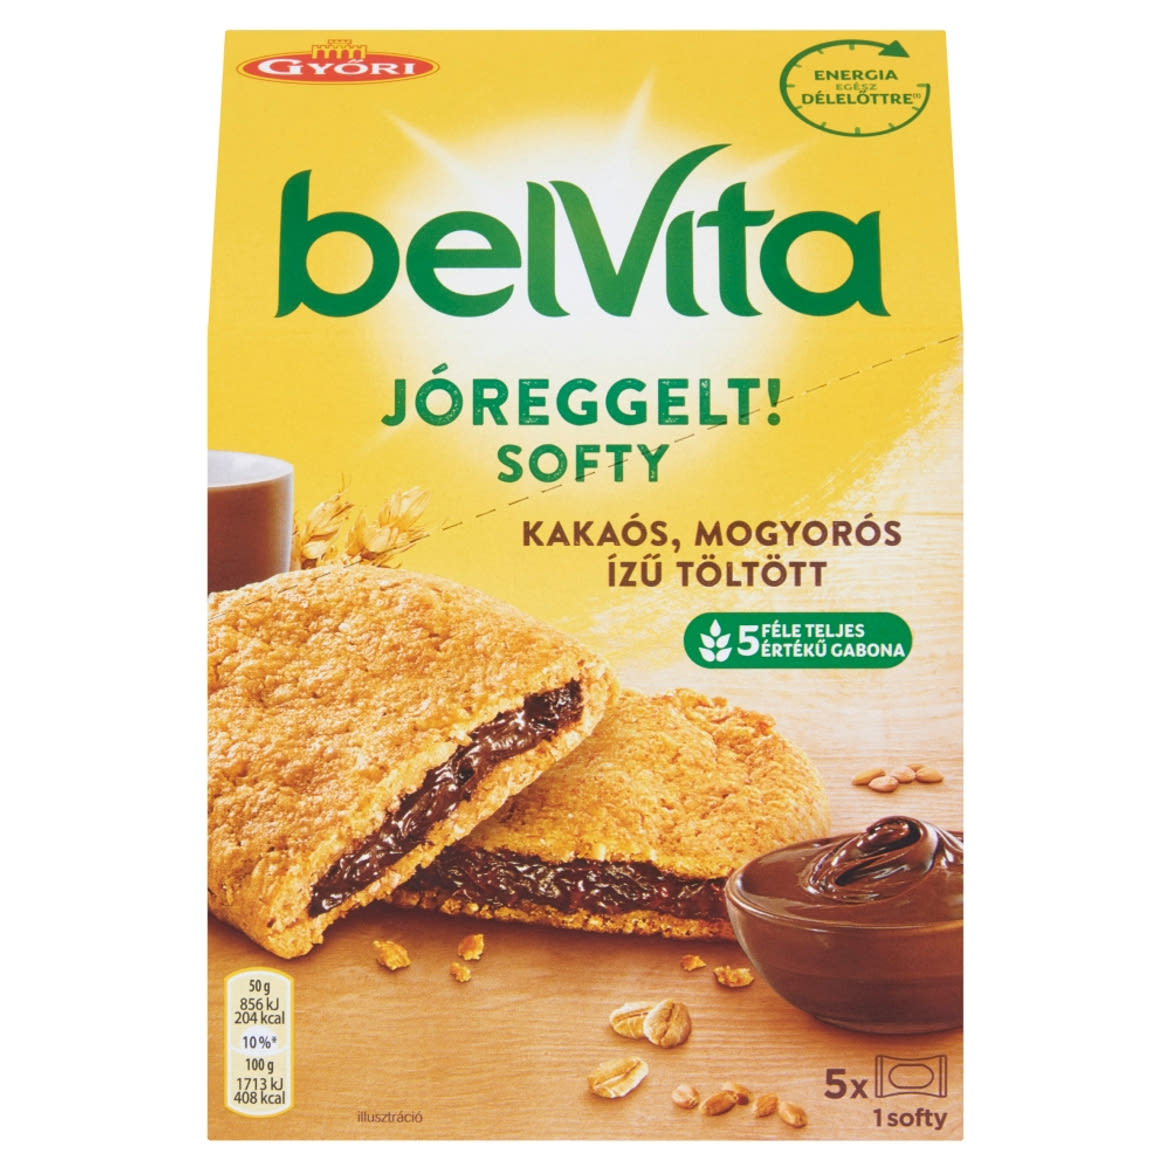 Belvita JóReggelt! Softy gabonás keksz mogyorós ízű kakaós töltelékkel 5 db